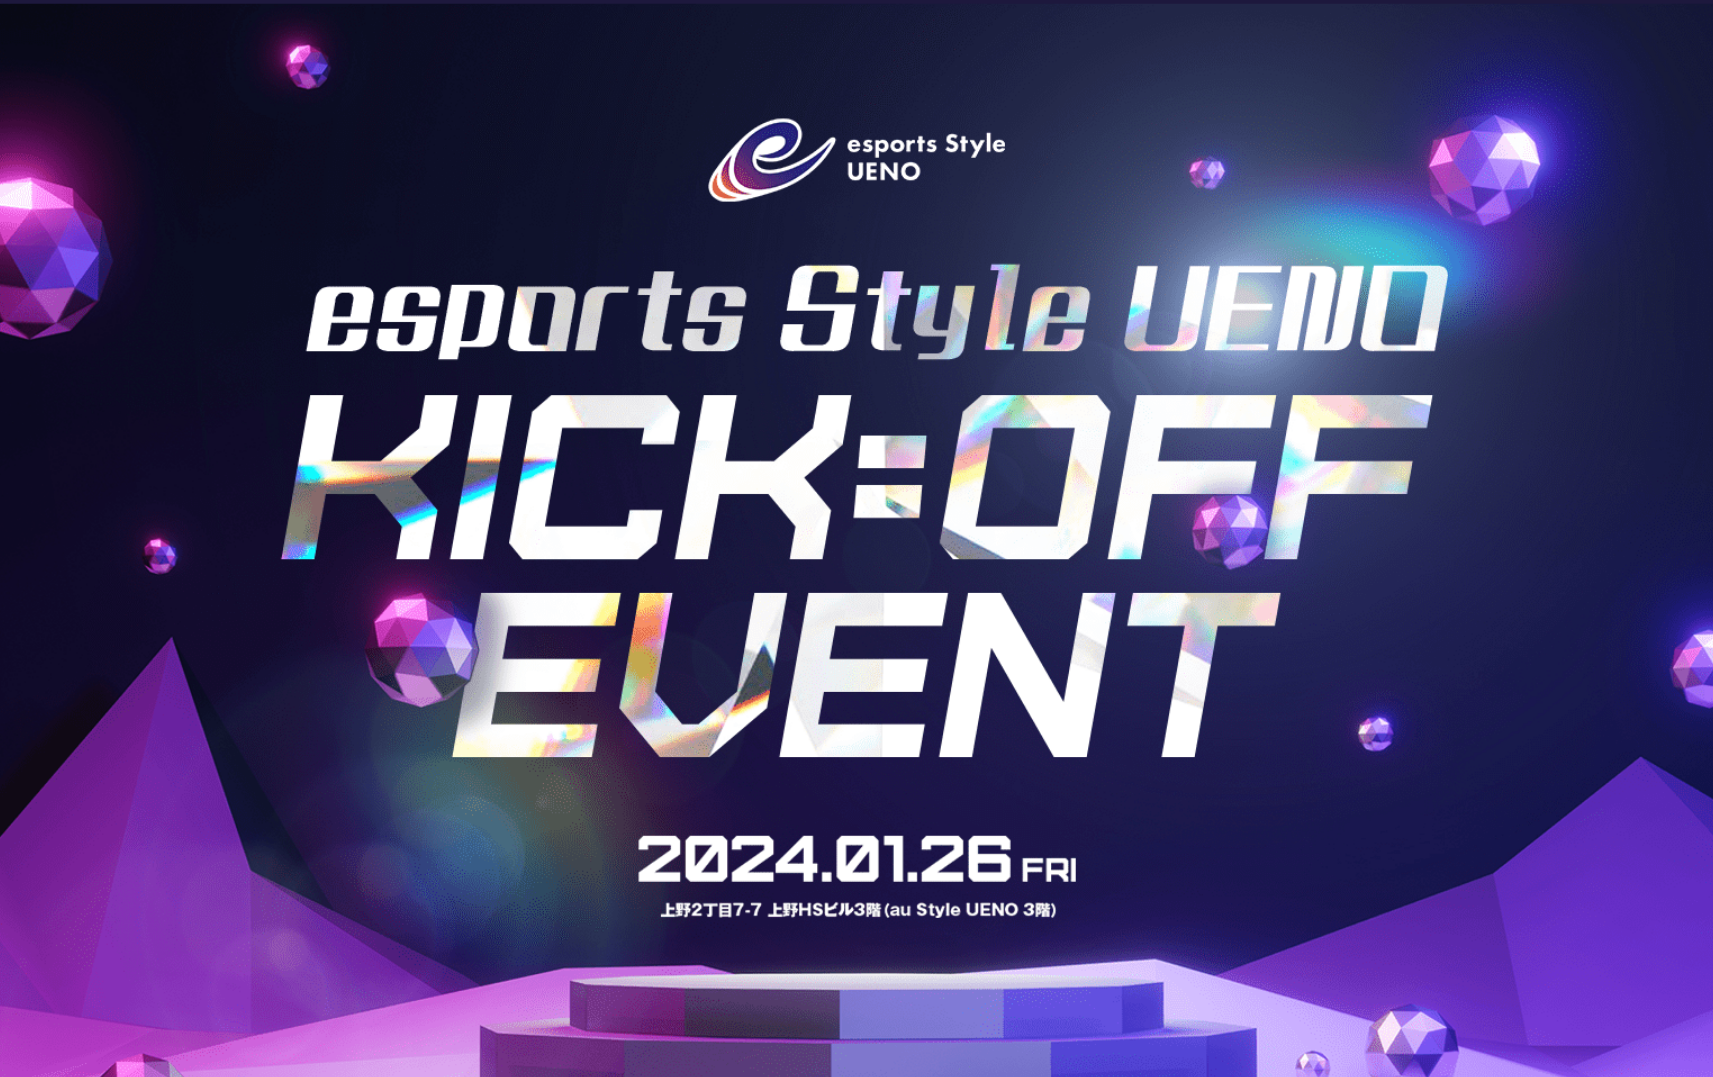 2024年1月26日 esports Style UENO KICK=OFF EVENT開催